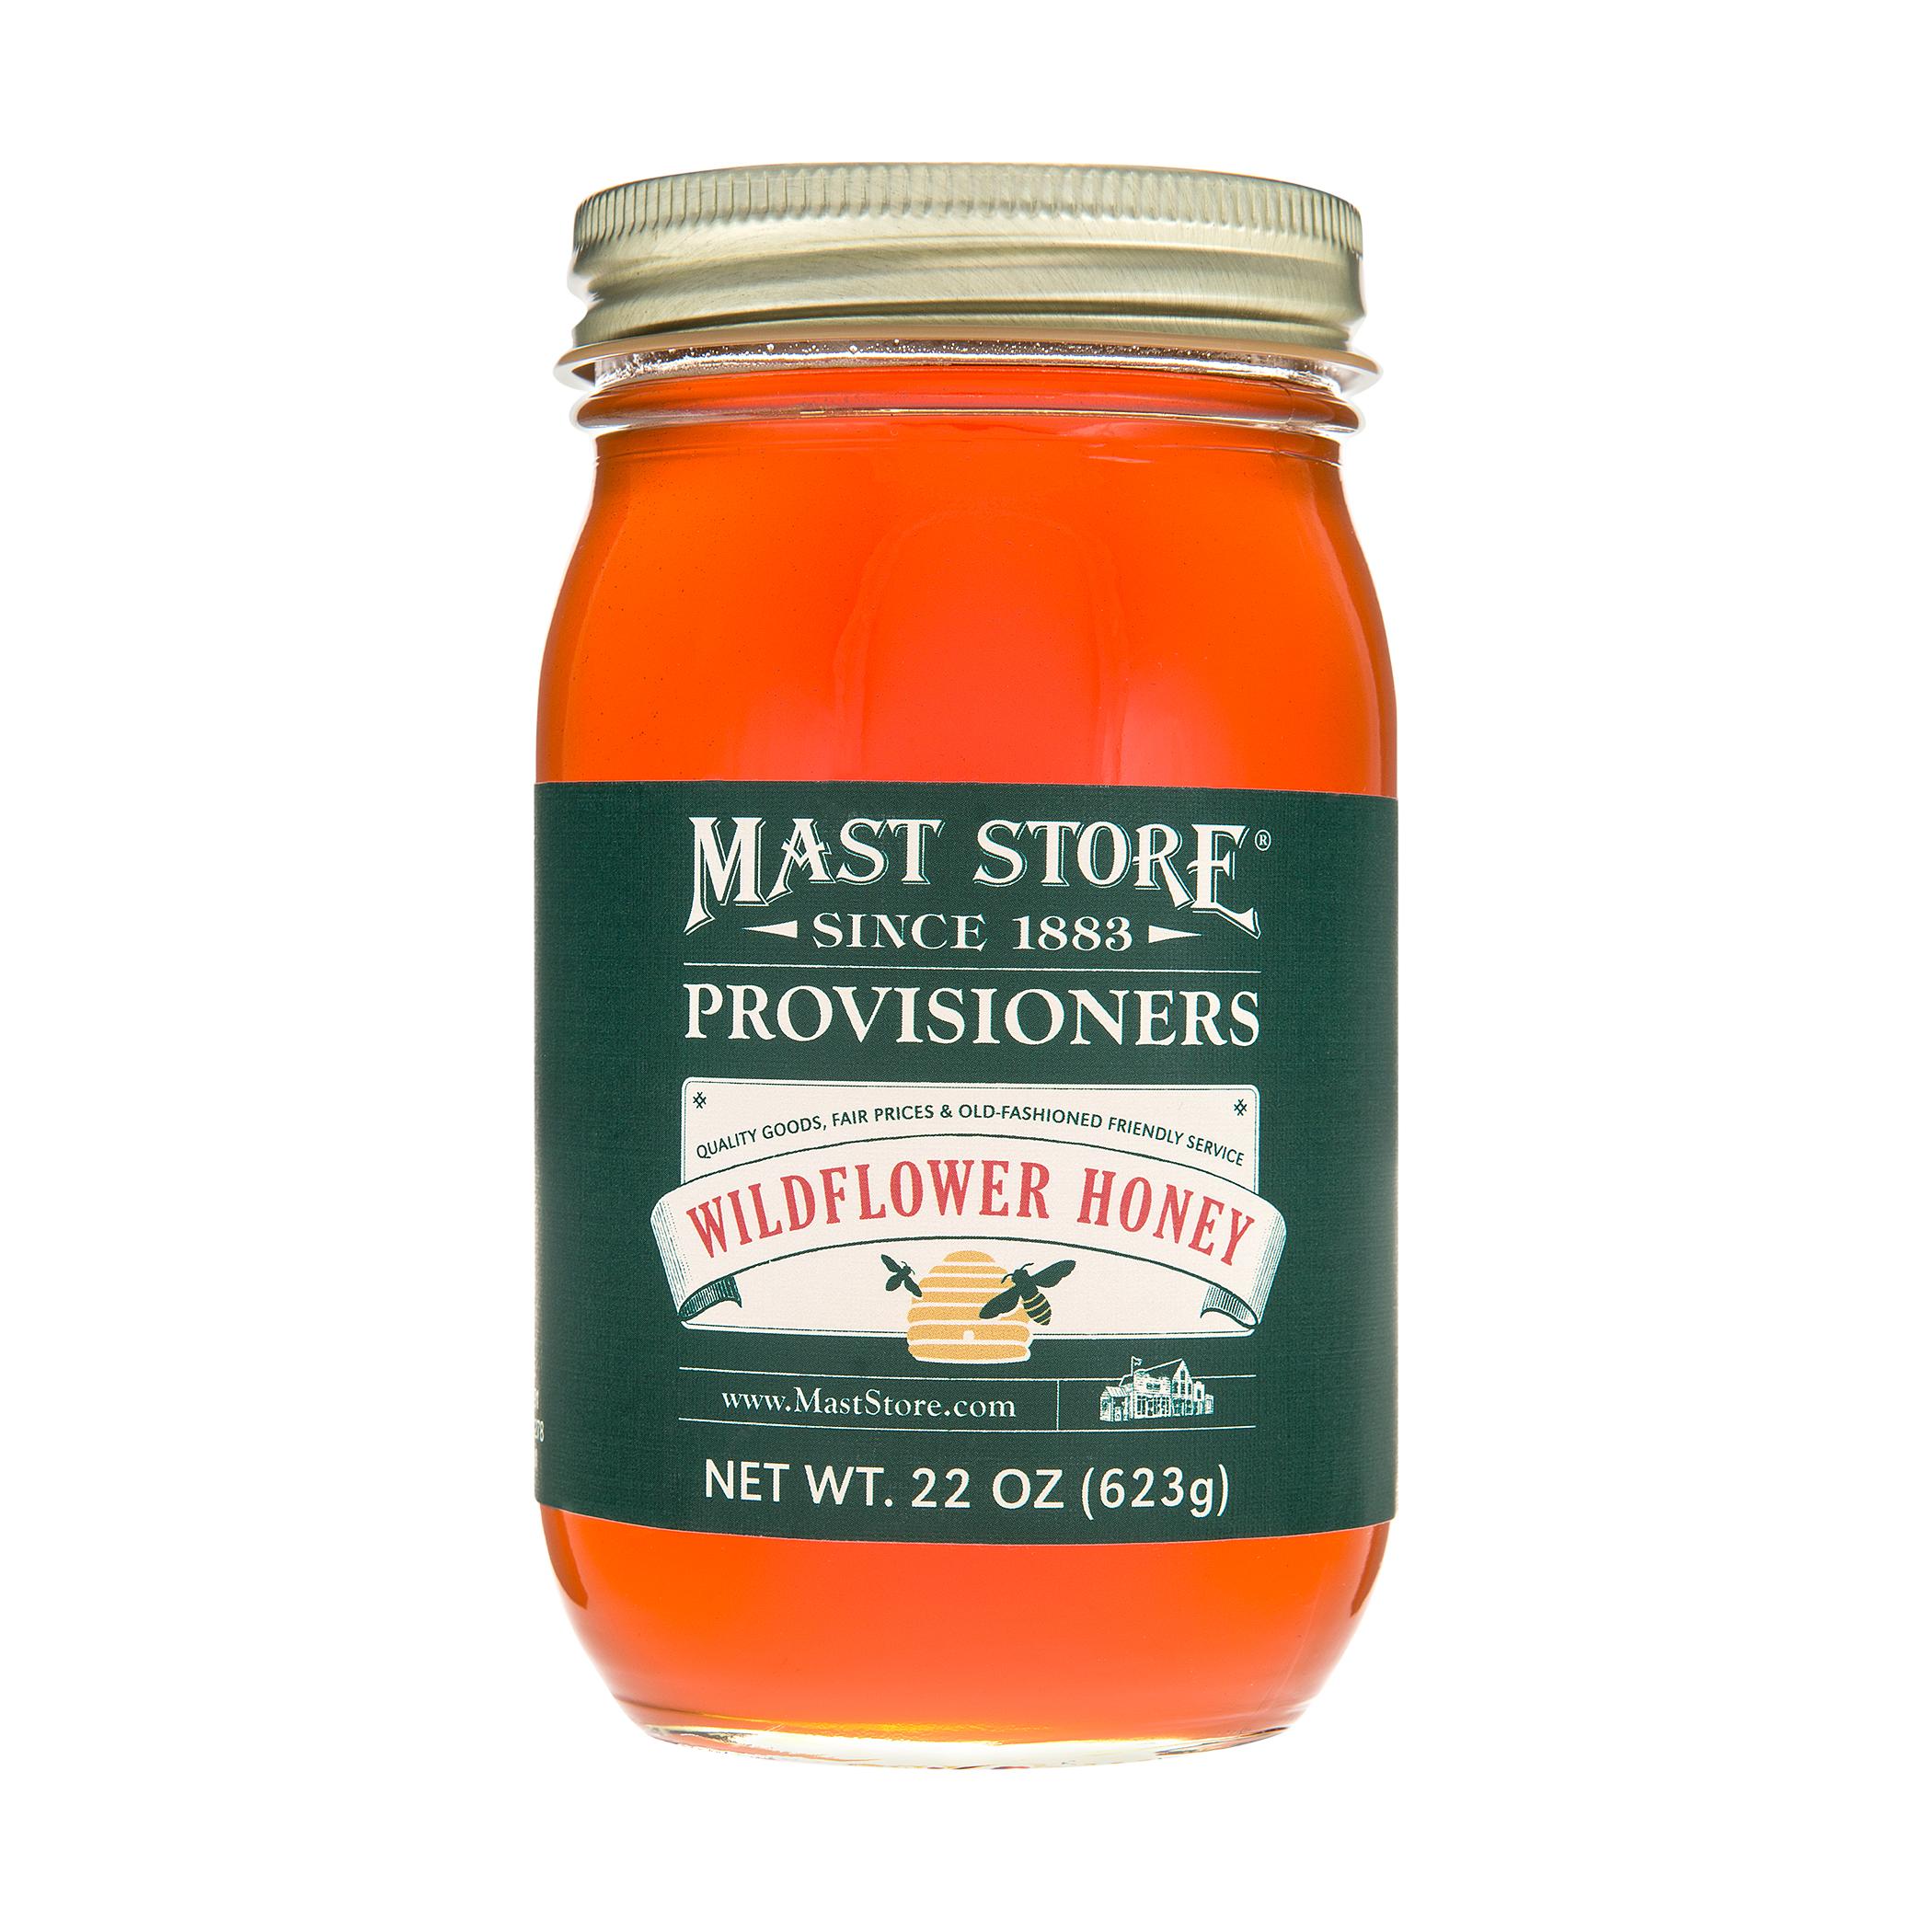  Mast Store Provisioners Wildflower Honey - Pint